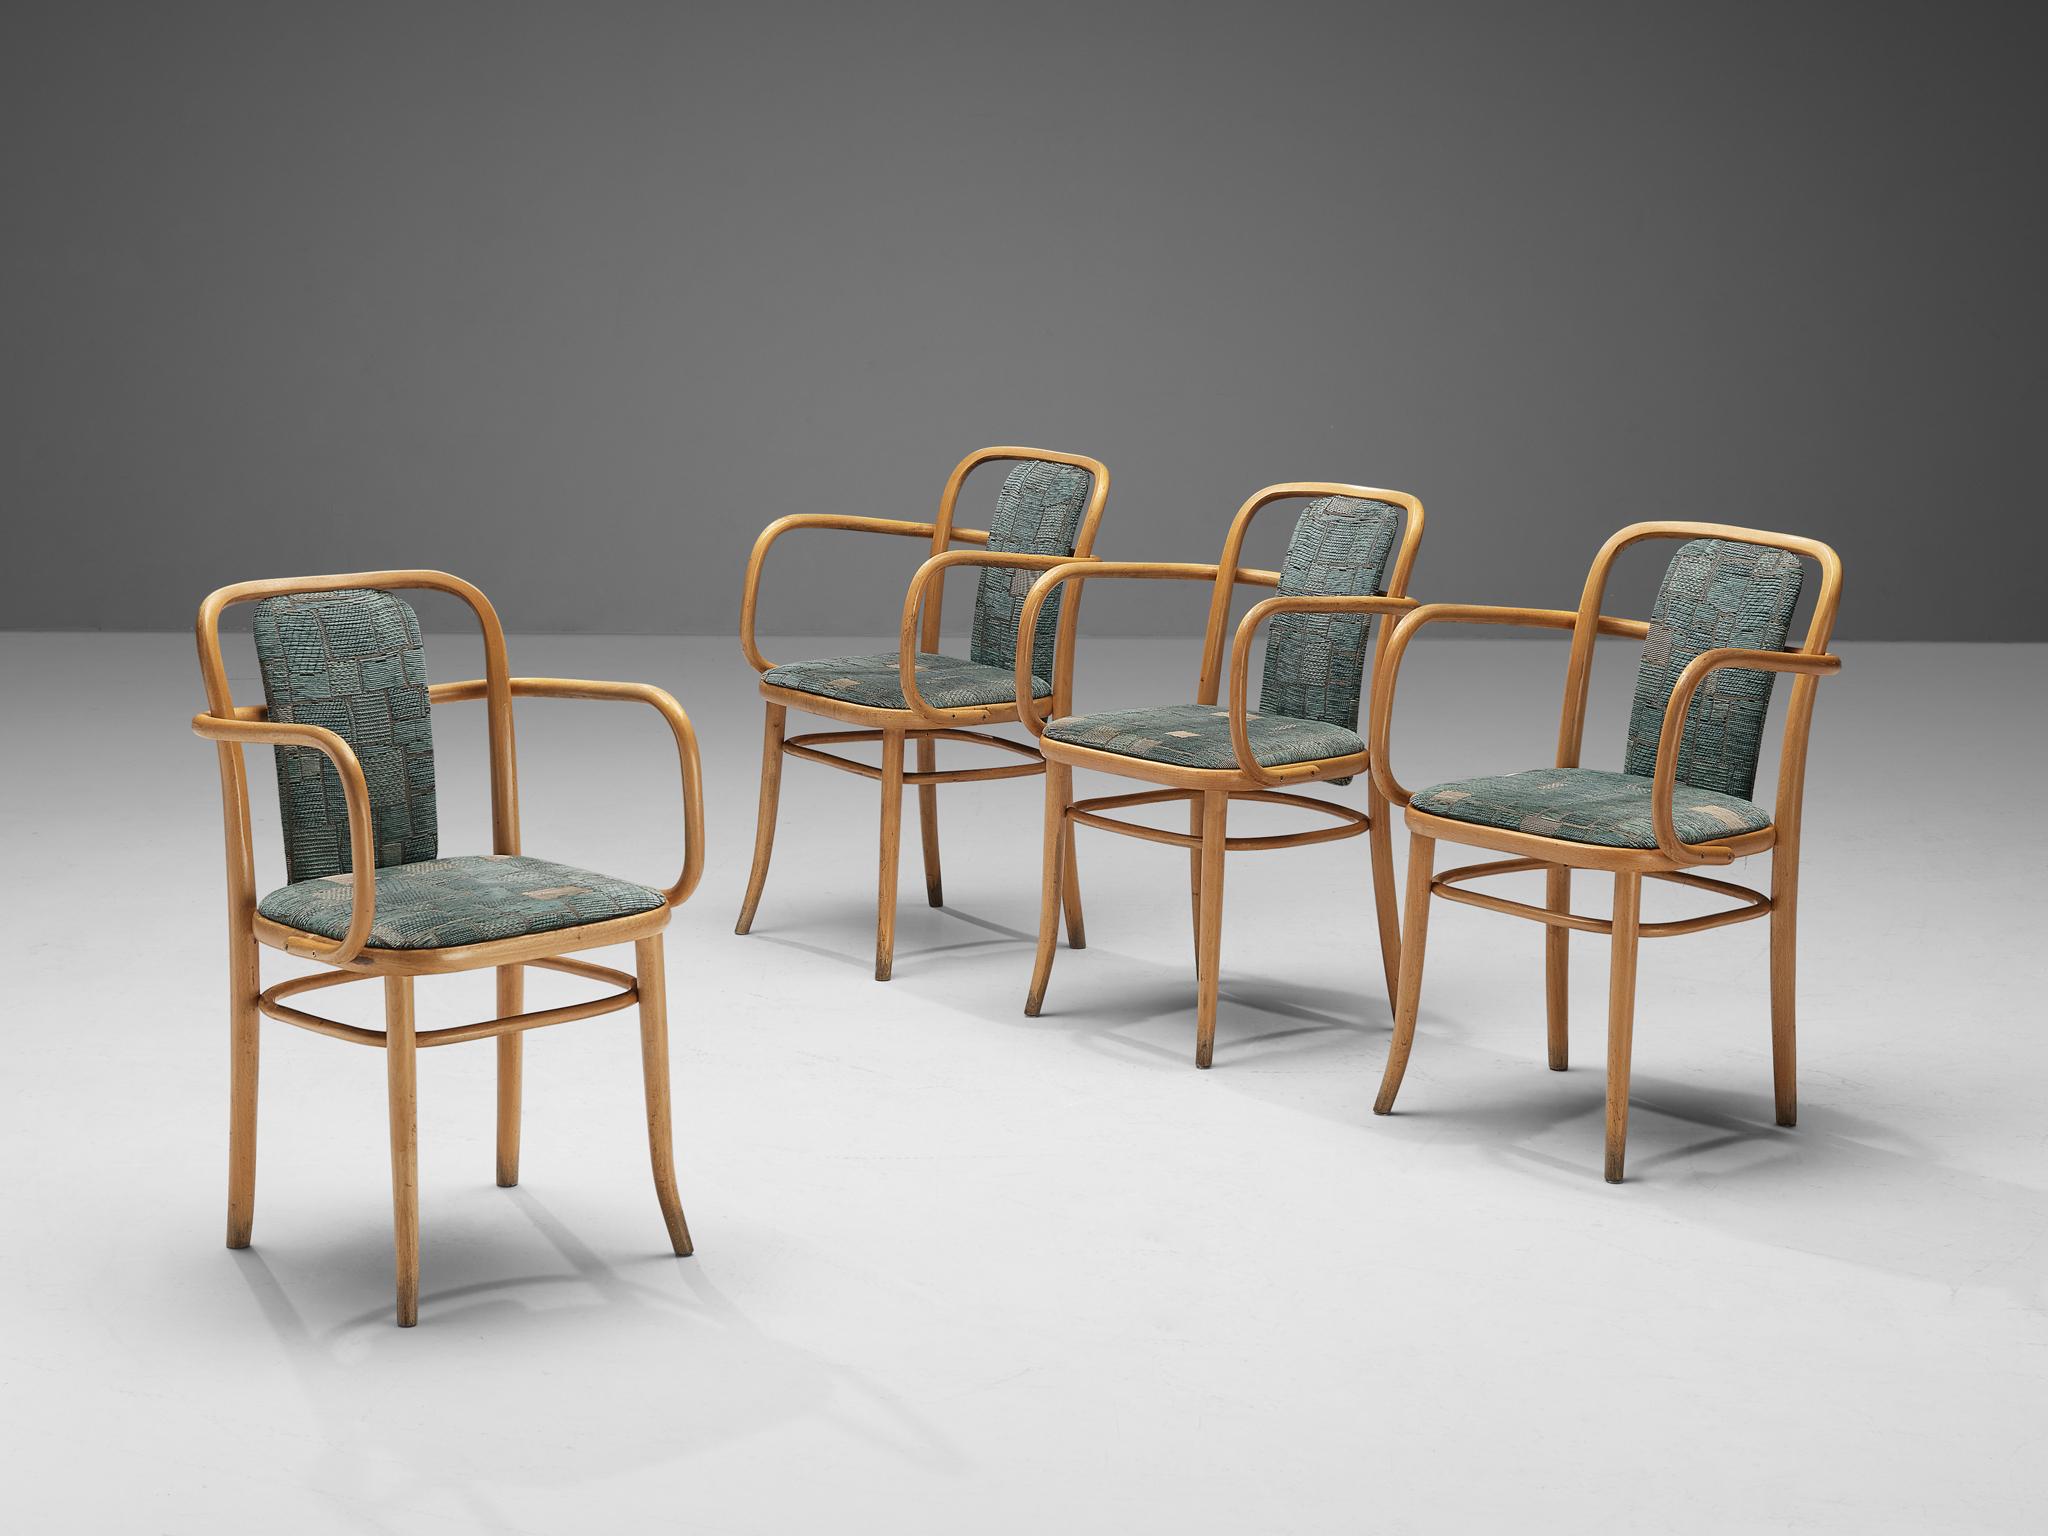 Chaises de salle à manger en bois courbé et tapisserie d'aigue-marine texturée, Europe, années 1960.
 
Ensemble de quatre fauteuils élégants en bois courbé. Les accoudoirs en bois courbé présentent des lignes sinueuses qui se fondent dans les